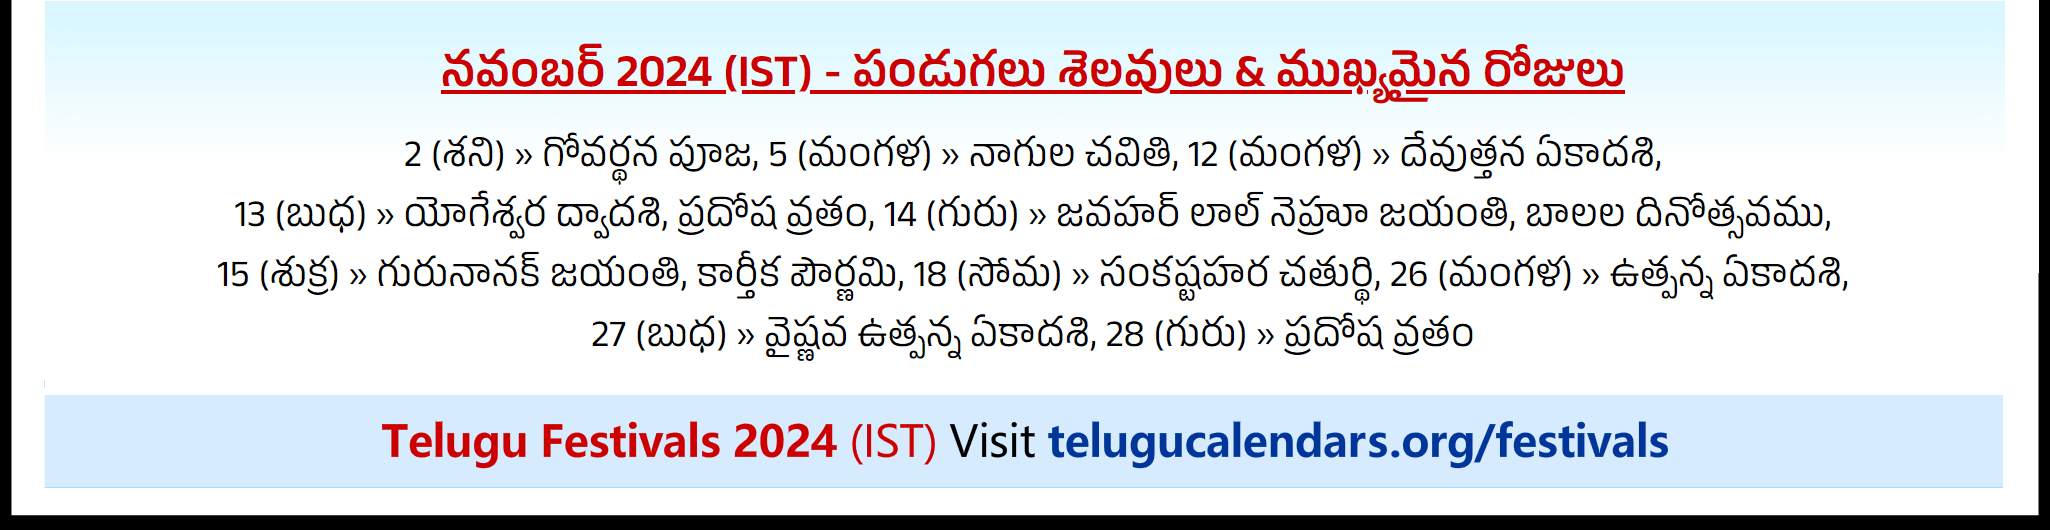 Telugu Festivals 2024 November Perth